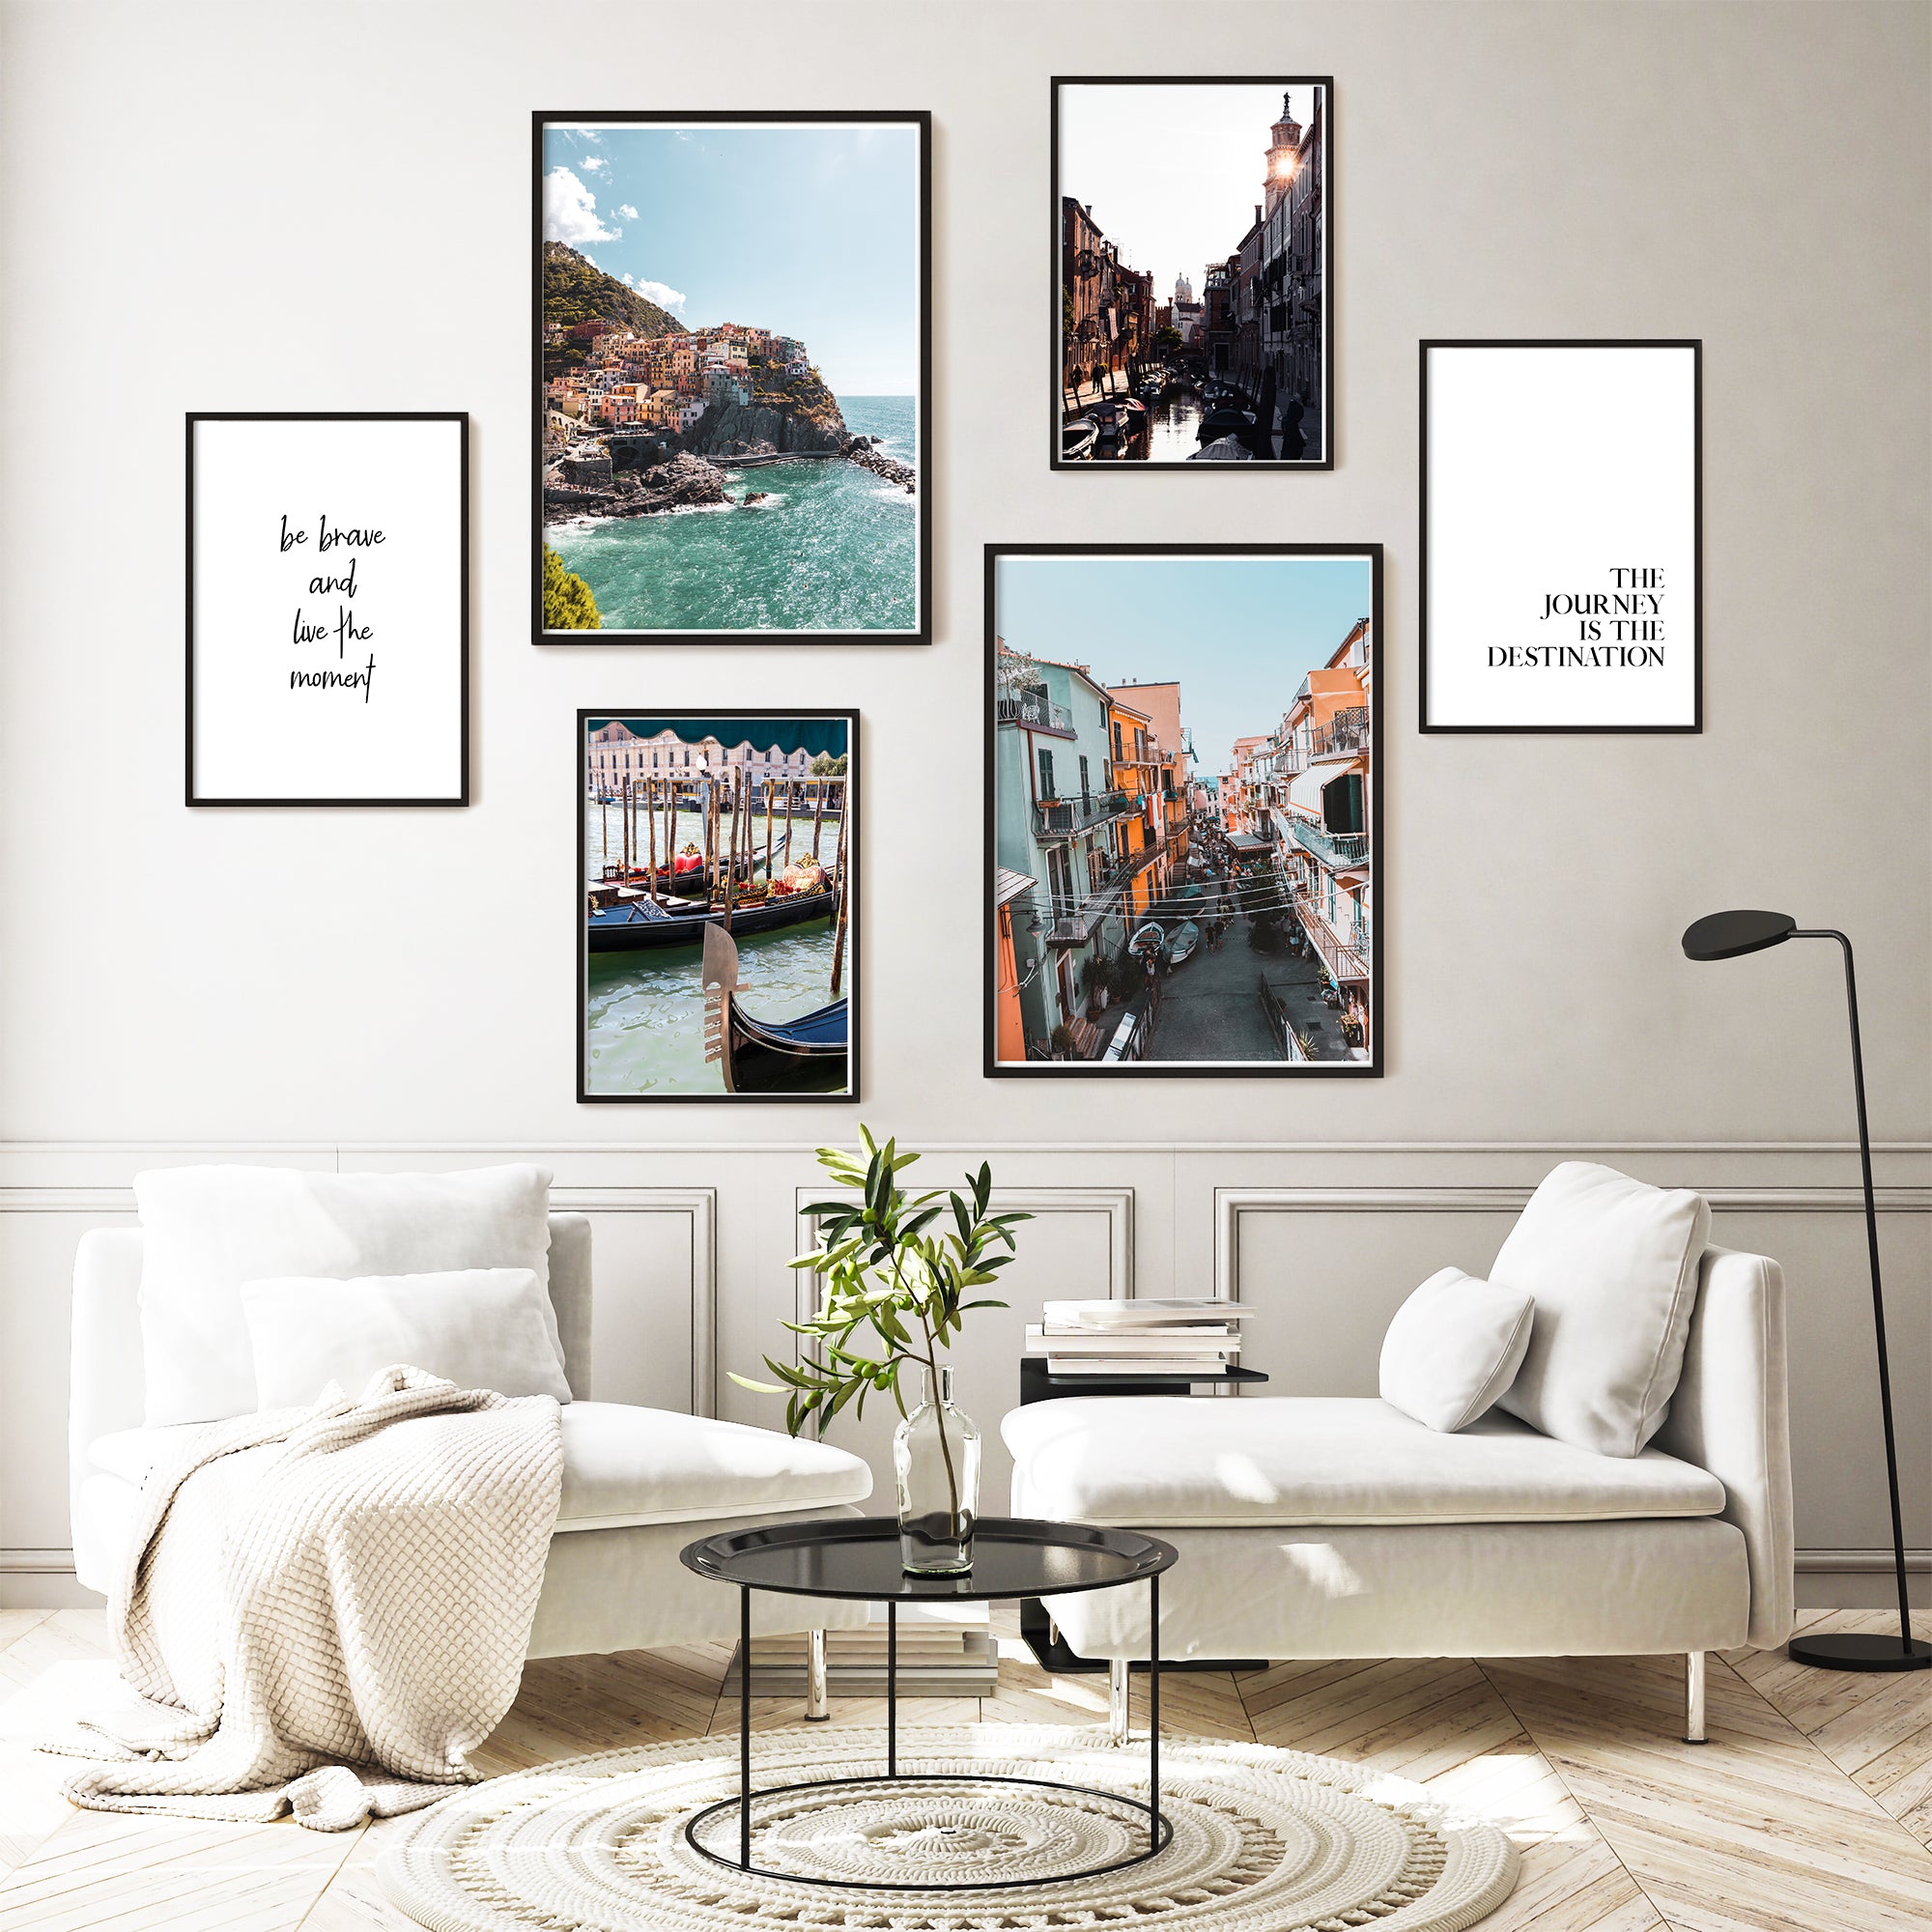 4one-Pictures-Poster-Set-Wohnzimmer-Natur-Italien-Spruch-meer-urlaub-bilderwand.jpg